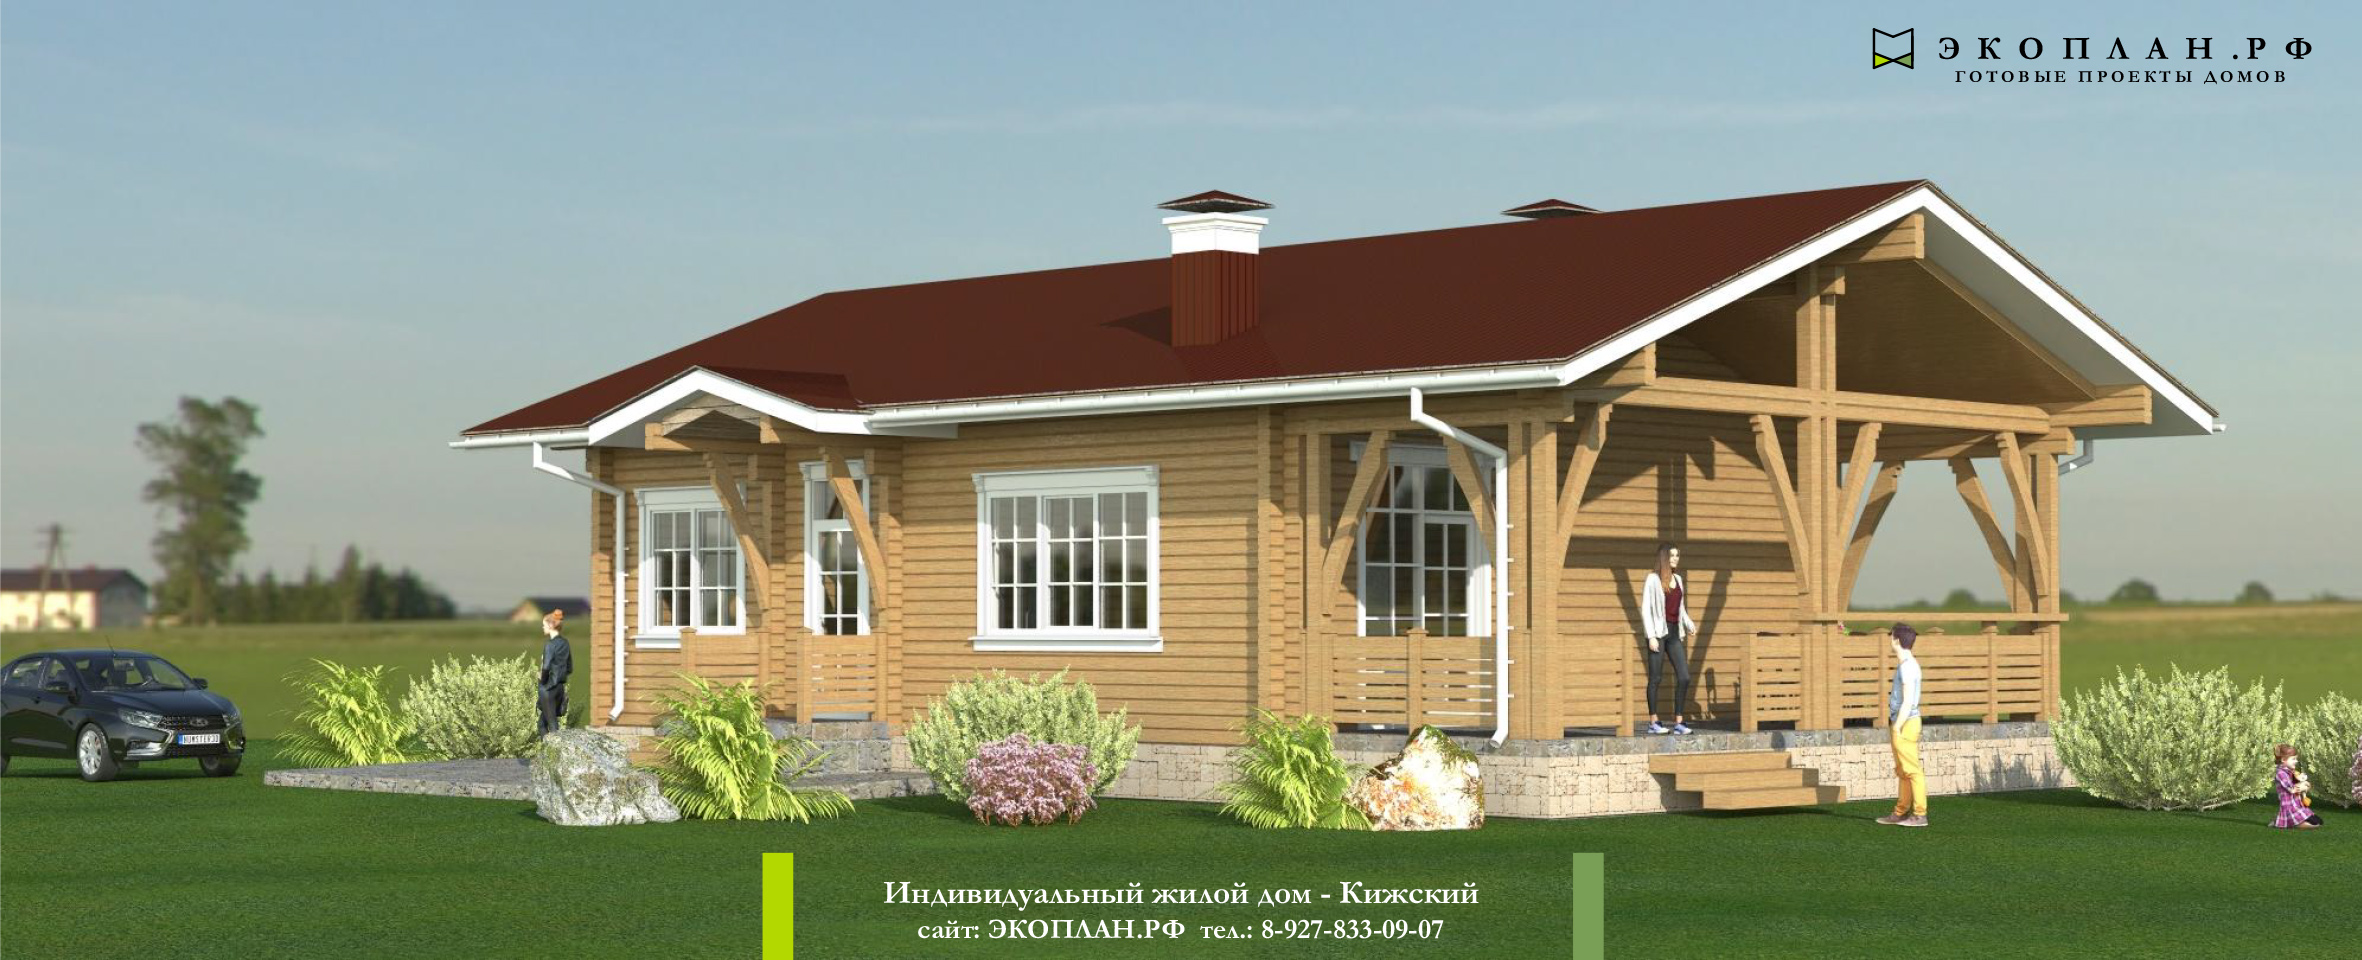 Готовый проект дома - Кижский - Экоплан.рф фасад